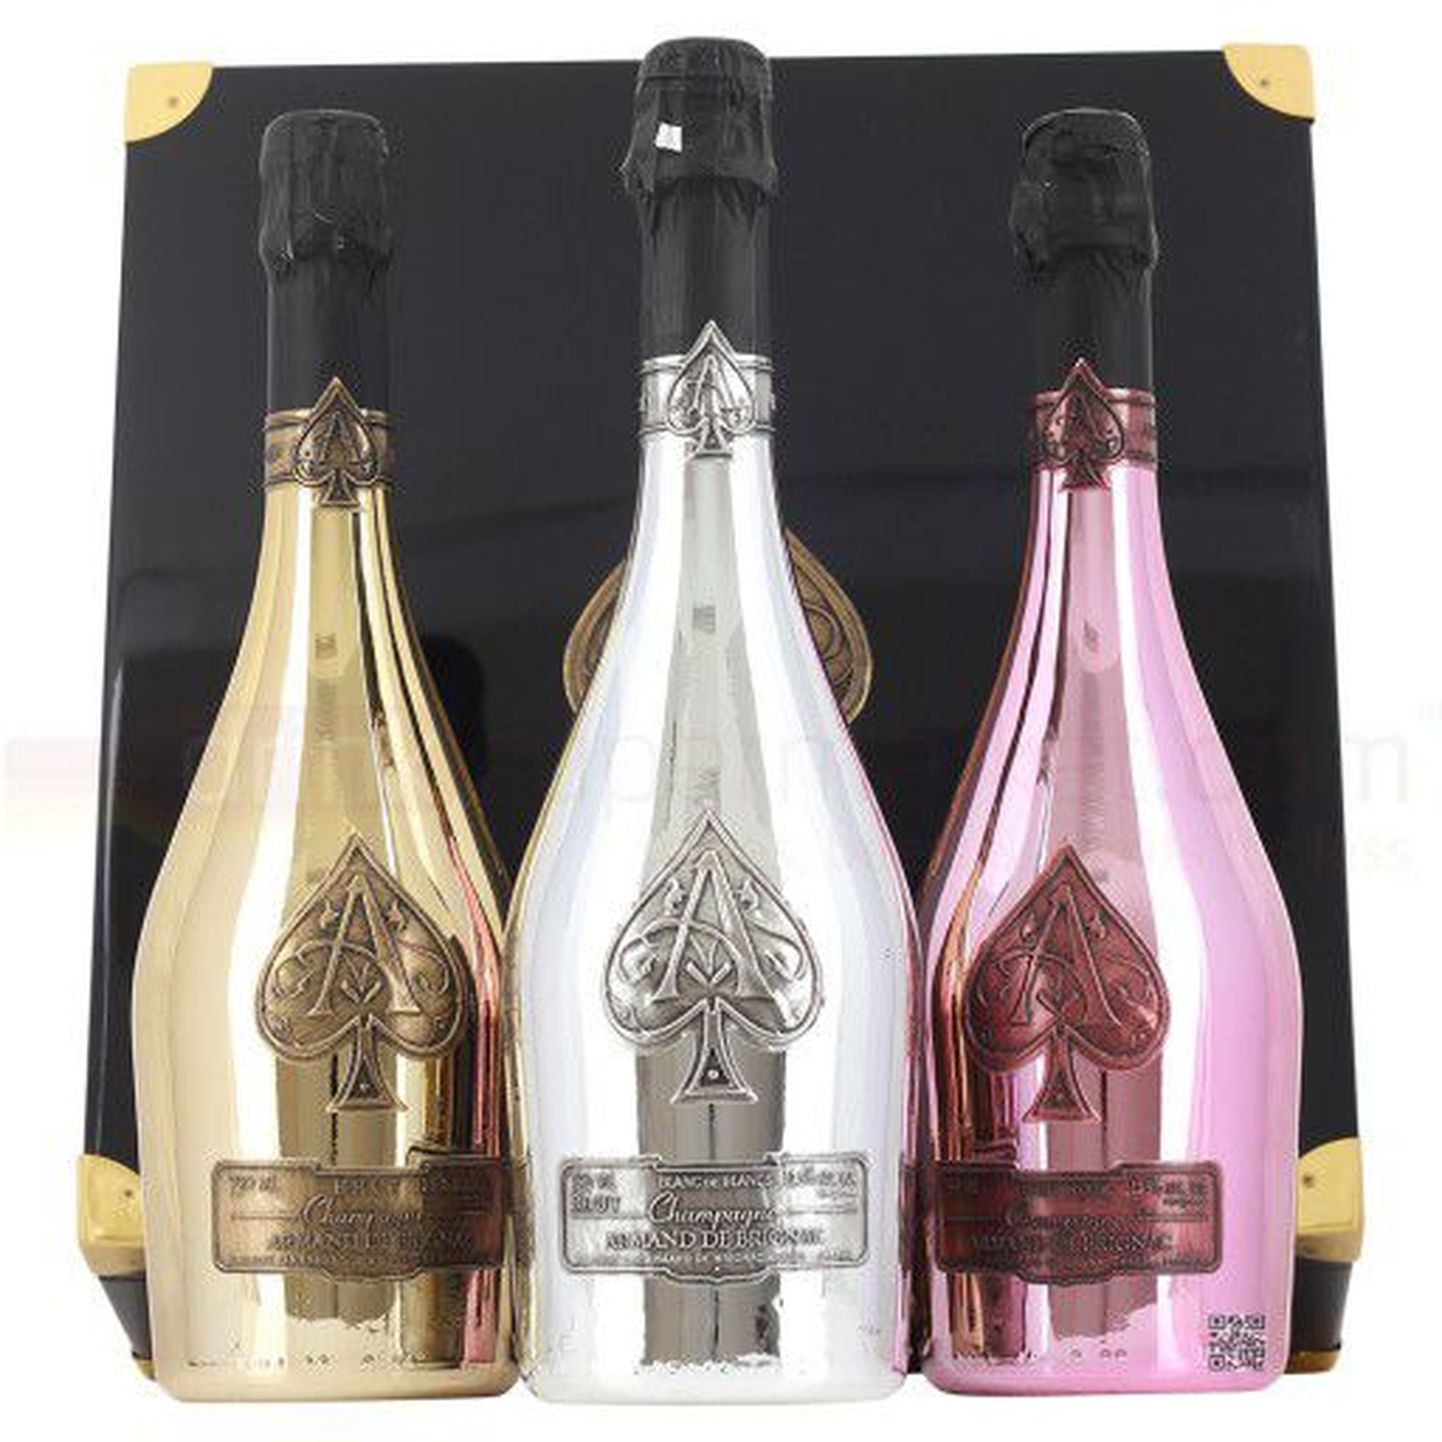 Nelly lavataguseid nõudmisi kroonivad 500 eurosed vintaaž-šampanjad